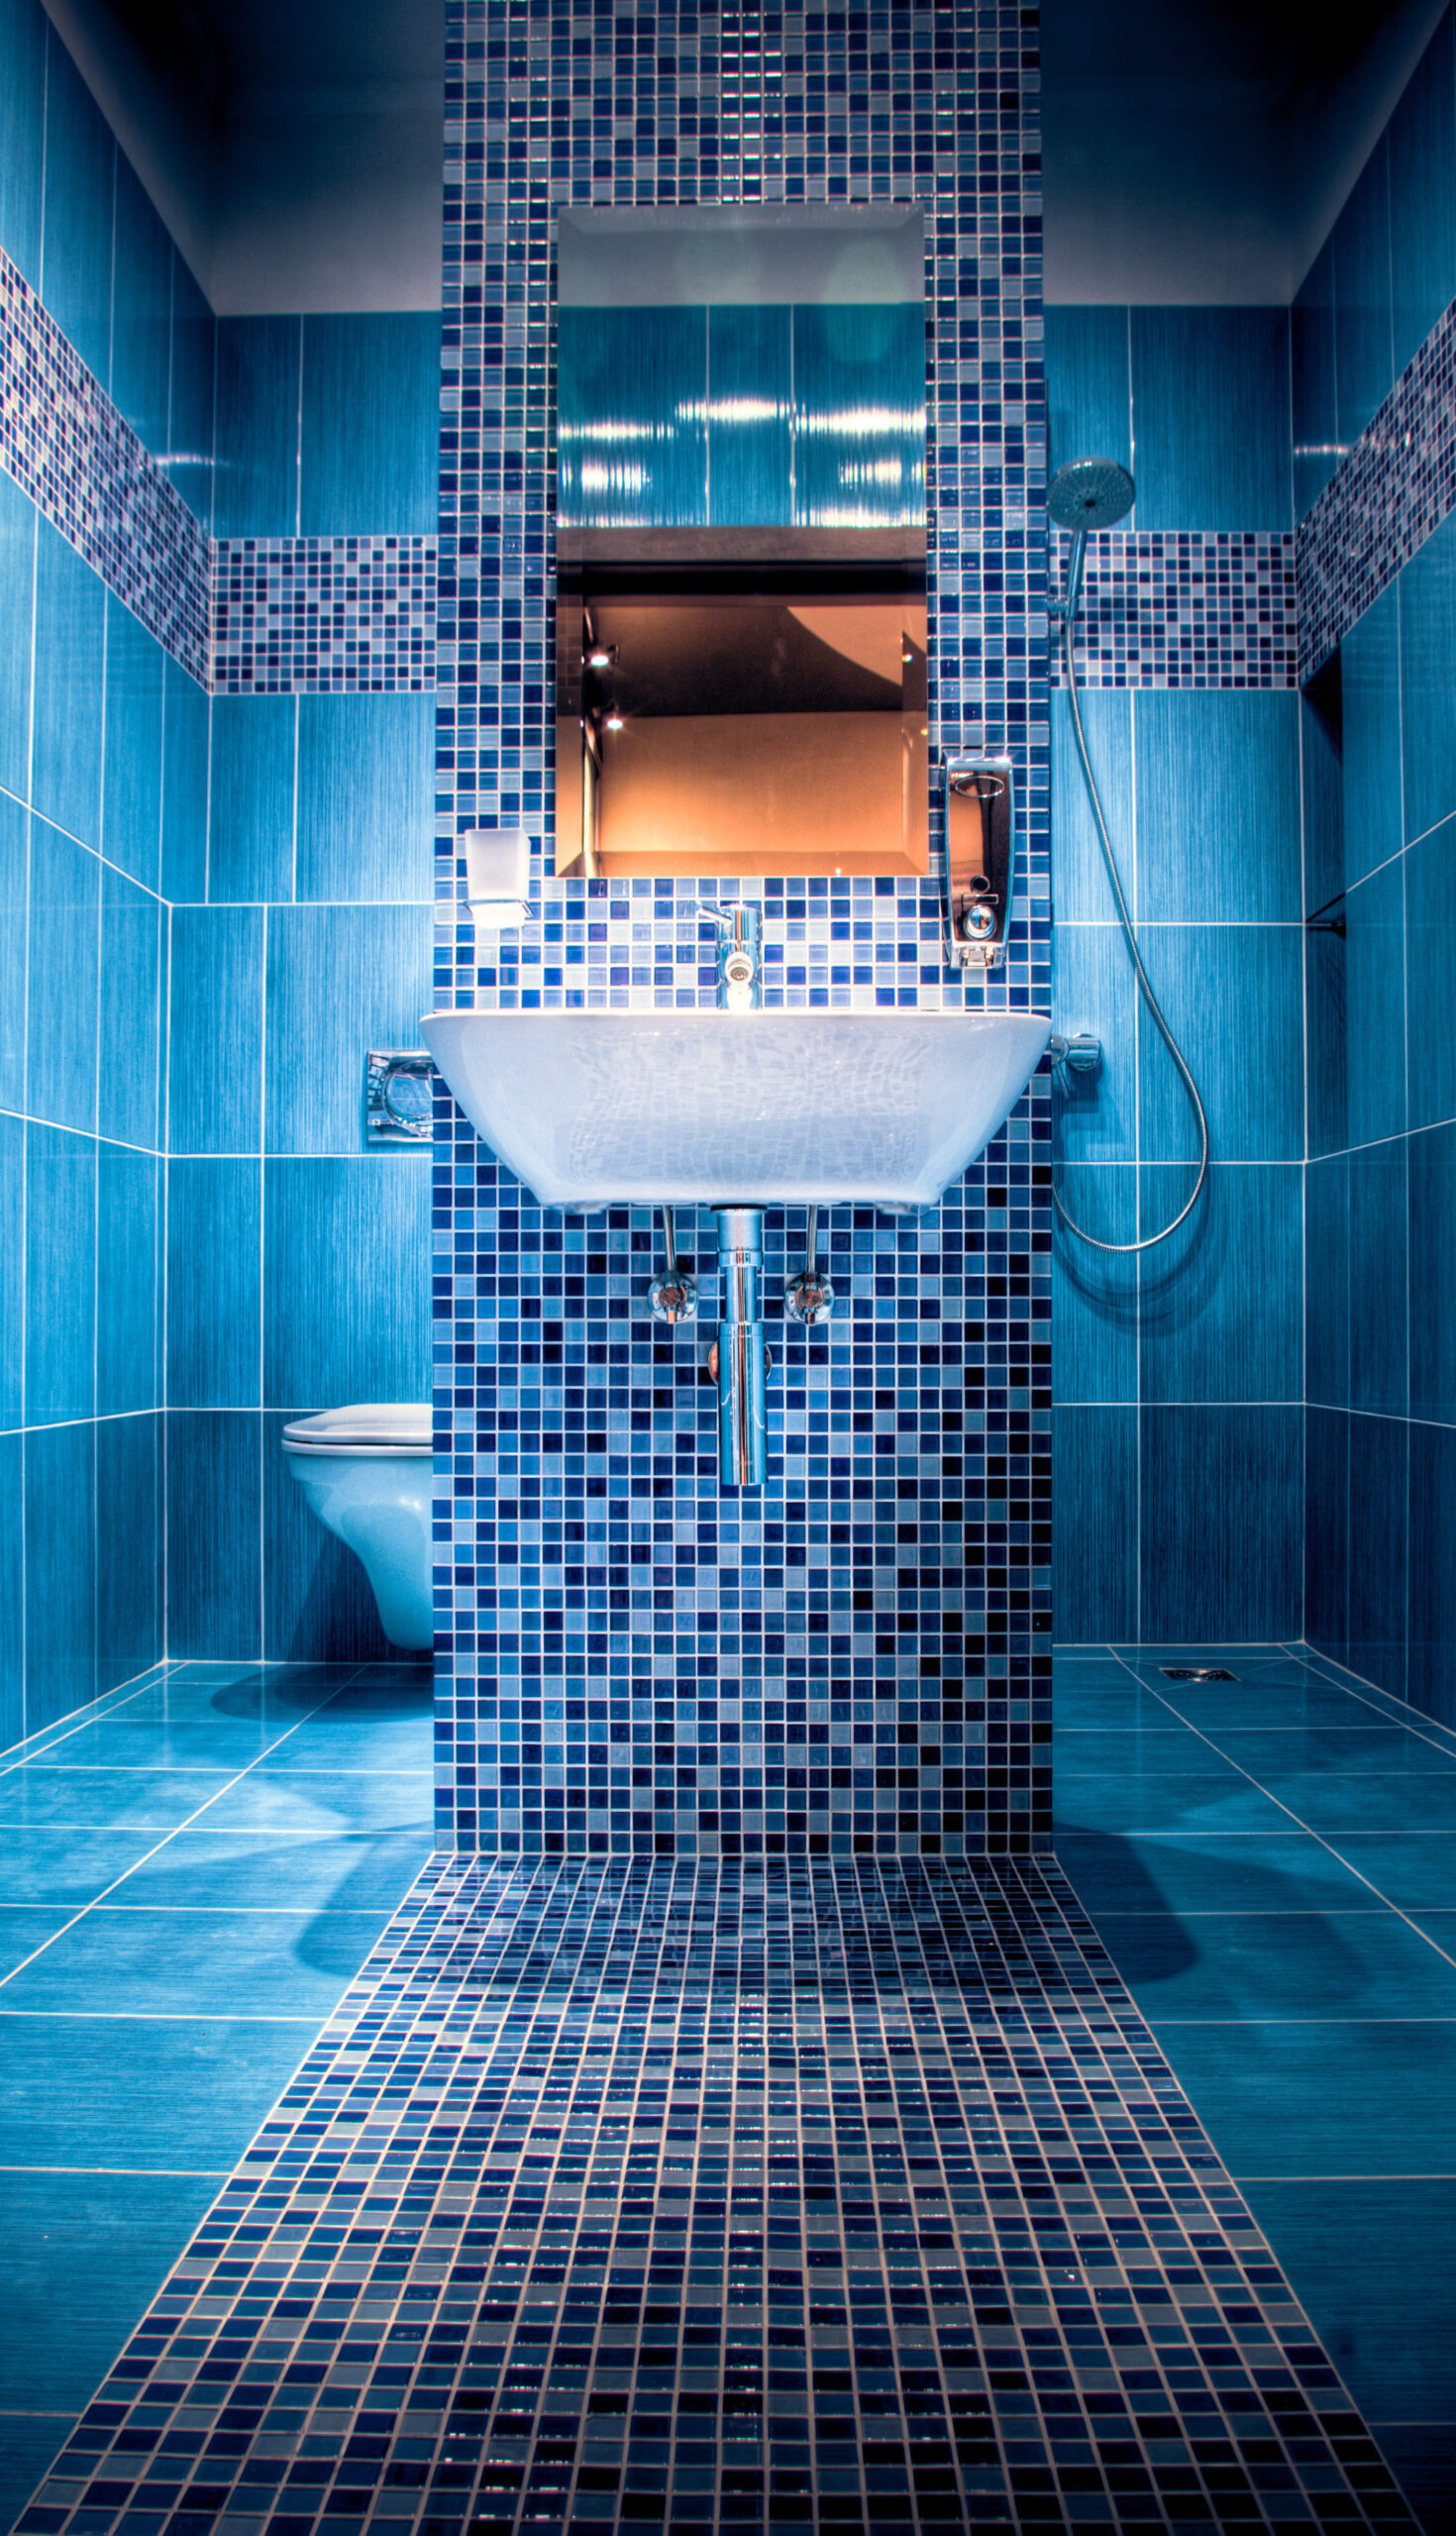 Badezimmer In Blau – Ideen, Anregungen Und Tipps | Obi pertaining to Badezimmer Blau